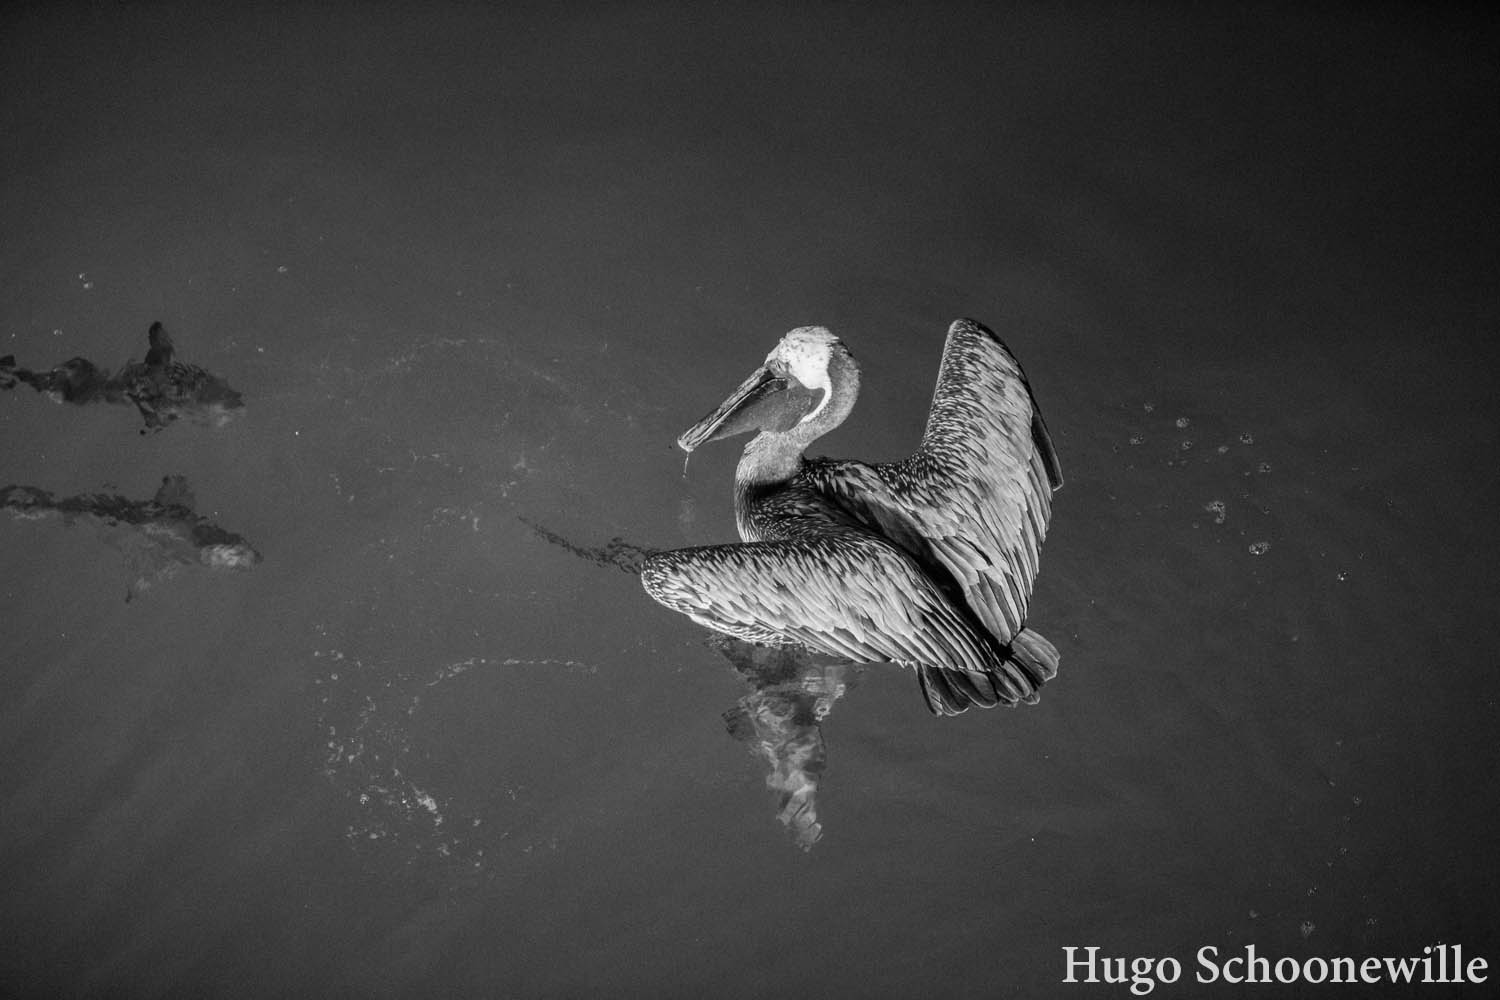 Zwartwitfoto van een pelikaan die het water in duikt om vissen te vangen.